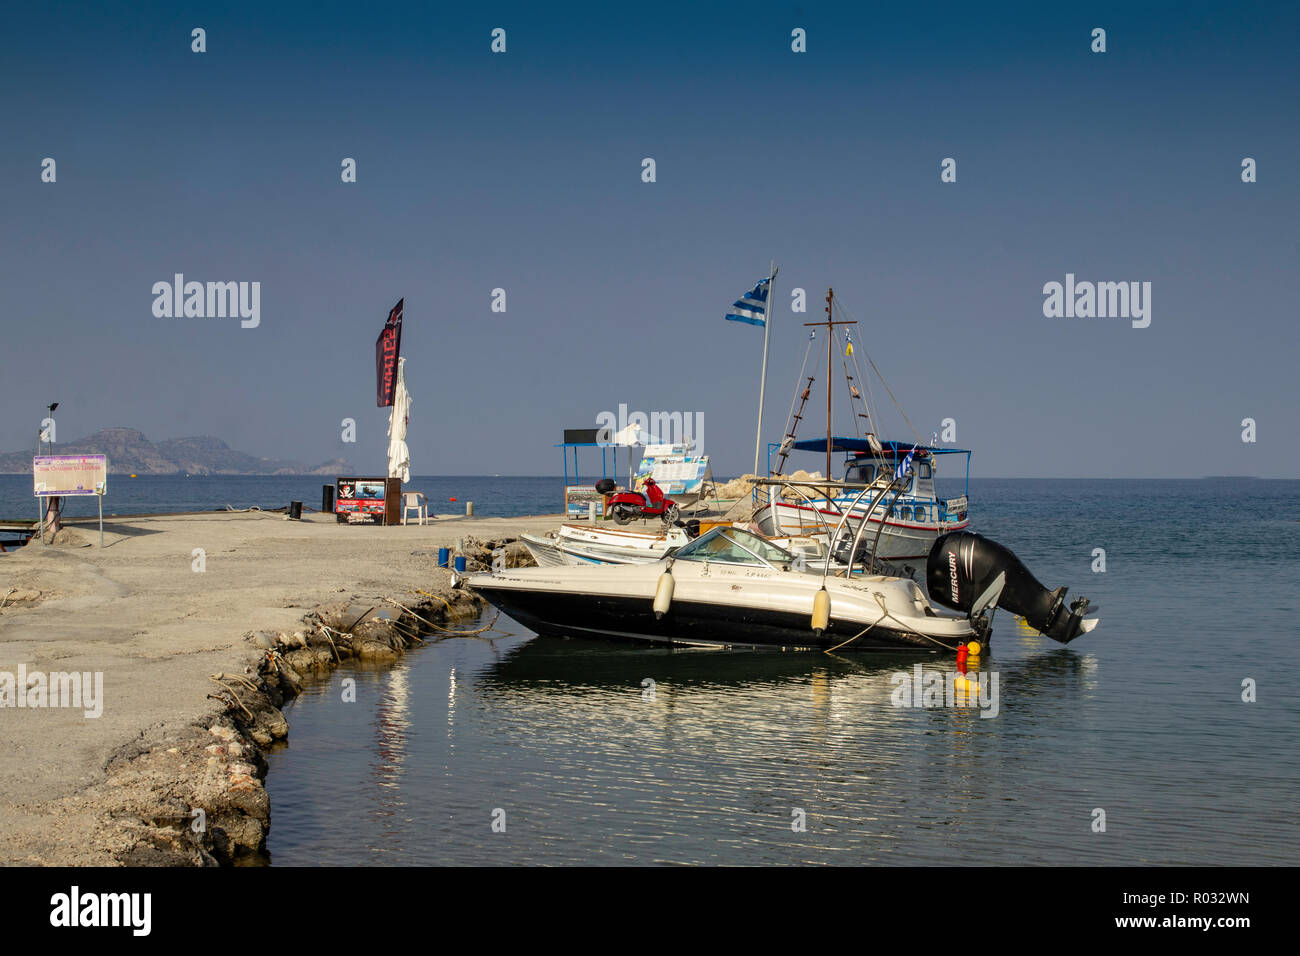 The small boat jetty near the main beach at Kolymbia,Rhodes,Greece. Stock Photo